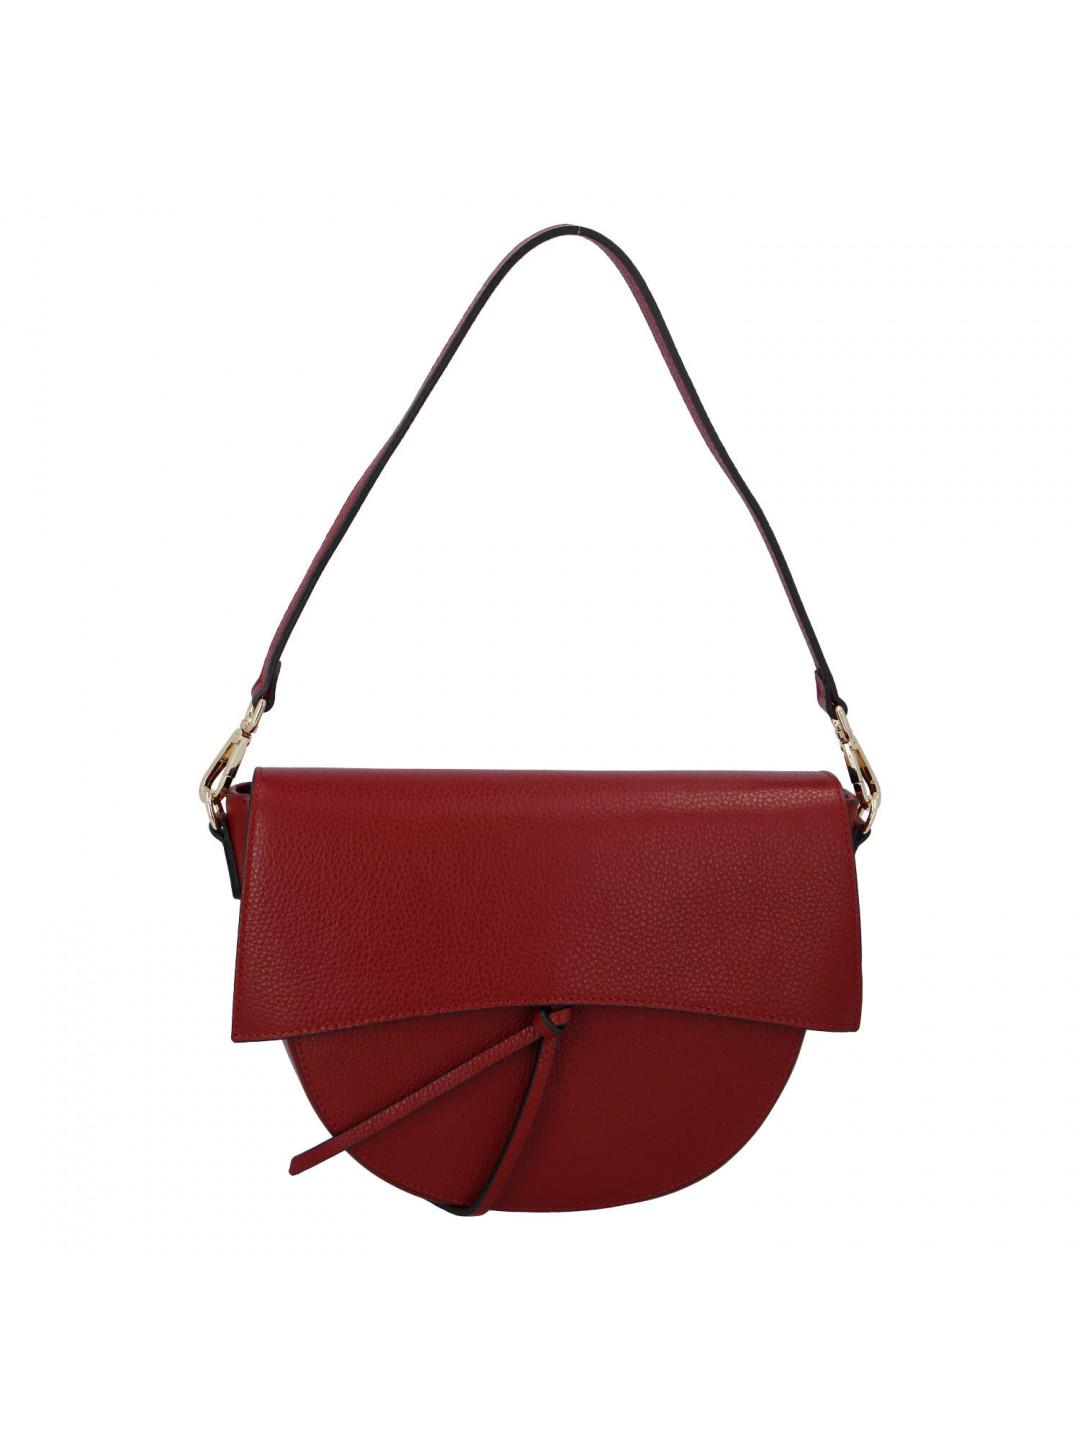 Menší dámská kožená kabelka Leather mini červená